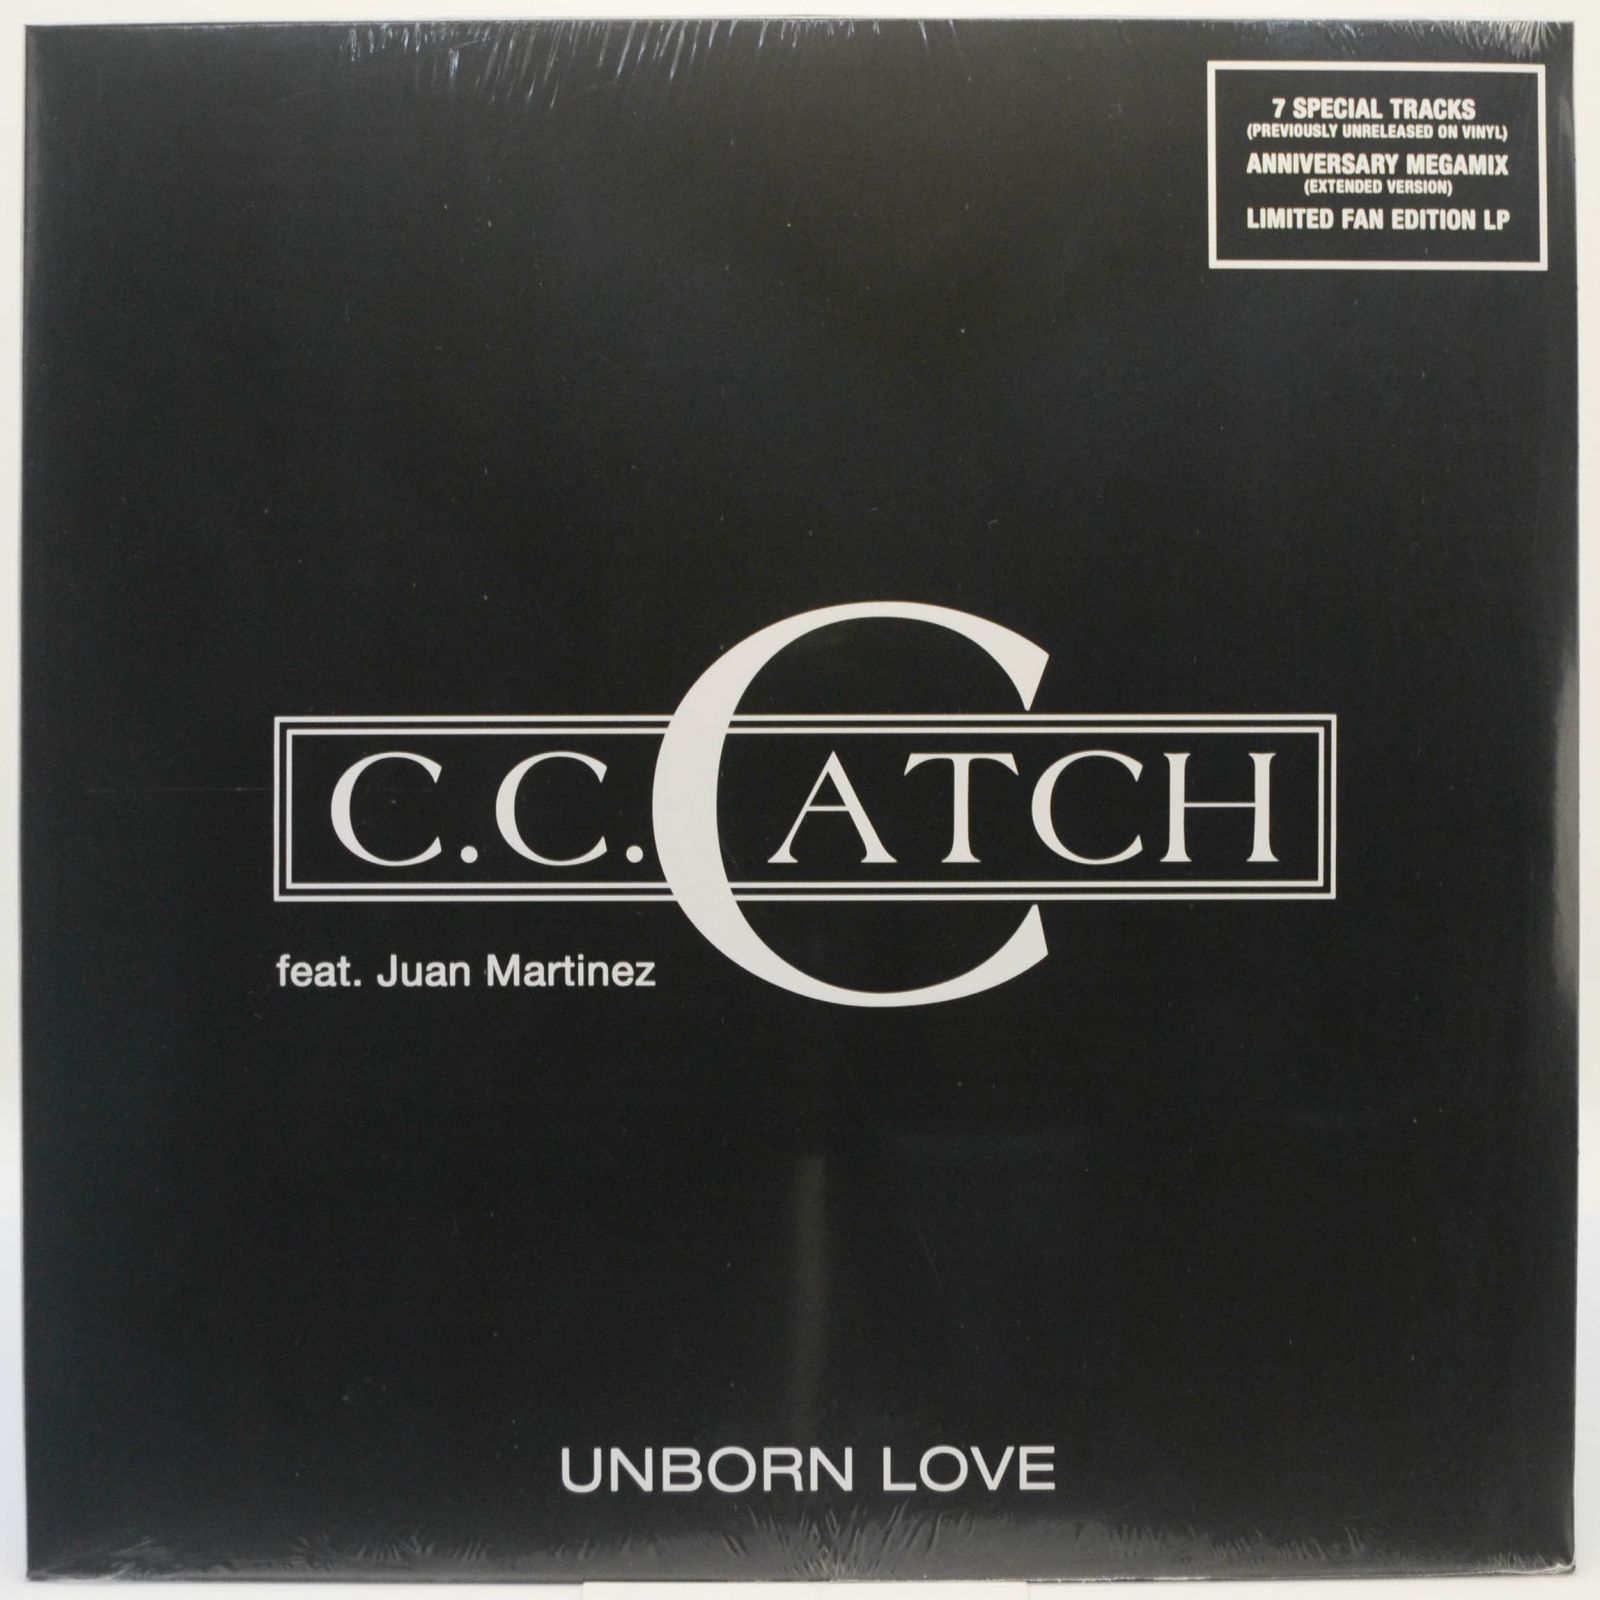 C.C. Catch feat. Juan Martinez — Unborn Love, 2019